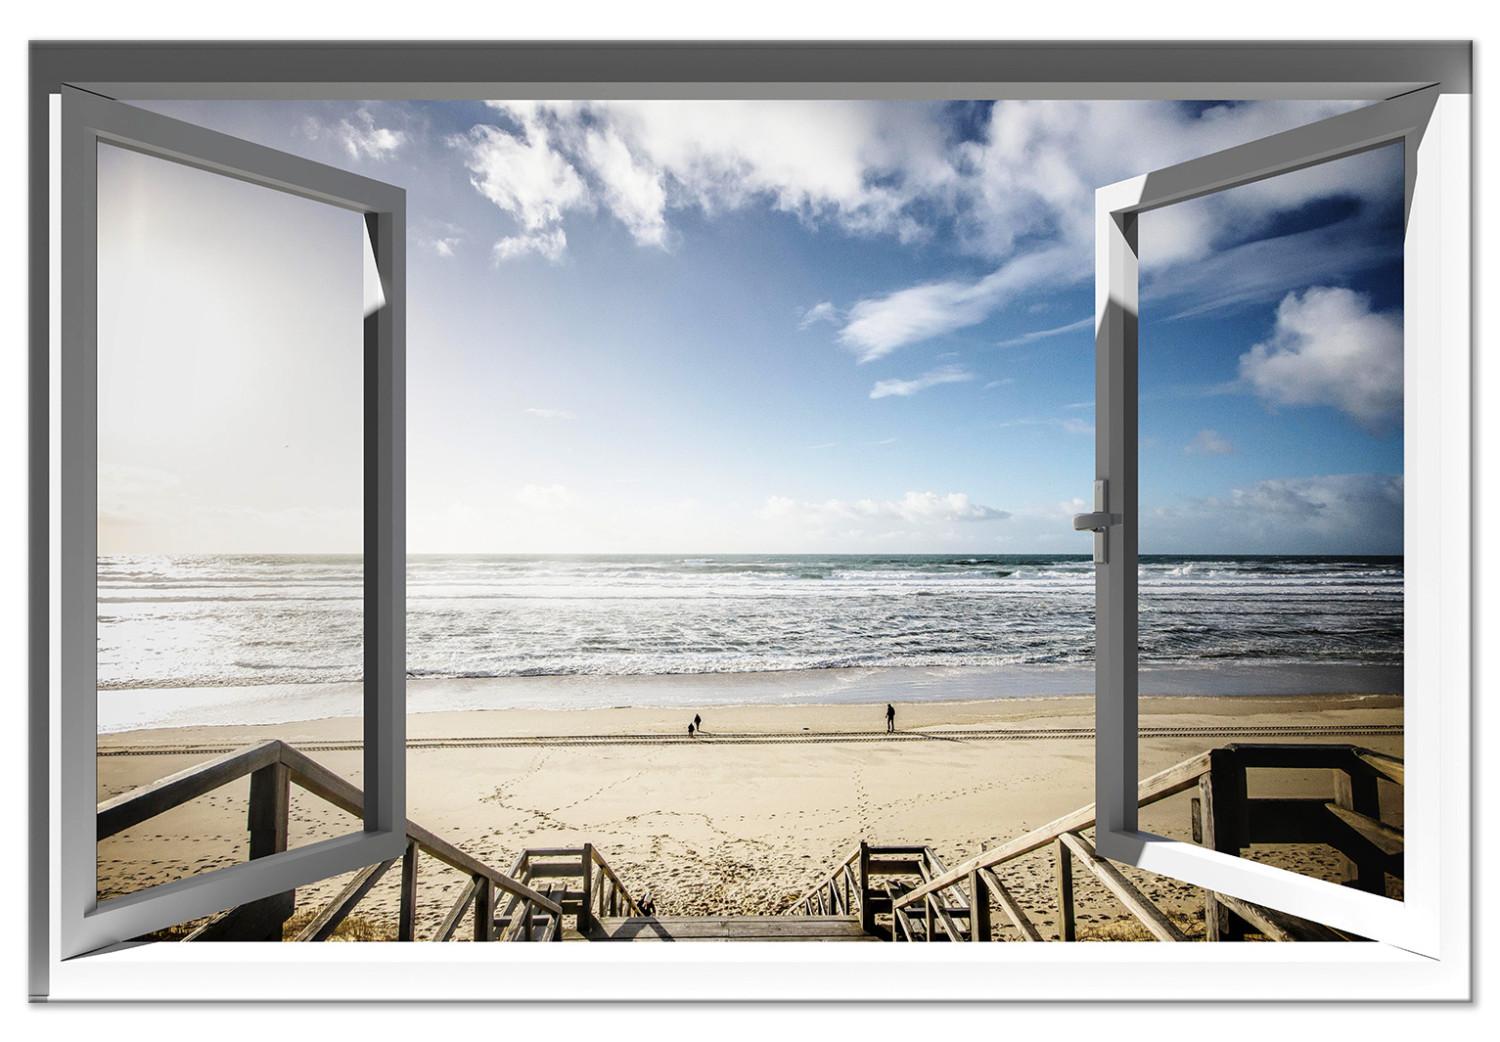 Cuadro moderno Vista de la calma (1 pieza) ancho - paisaje de playa y mar